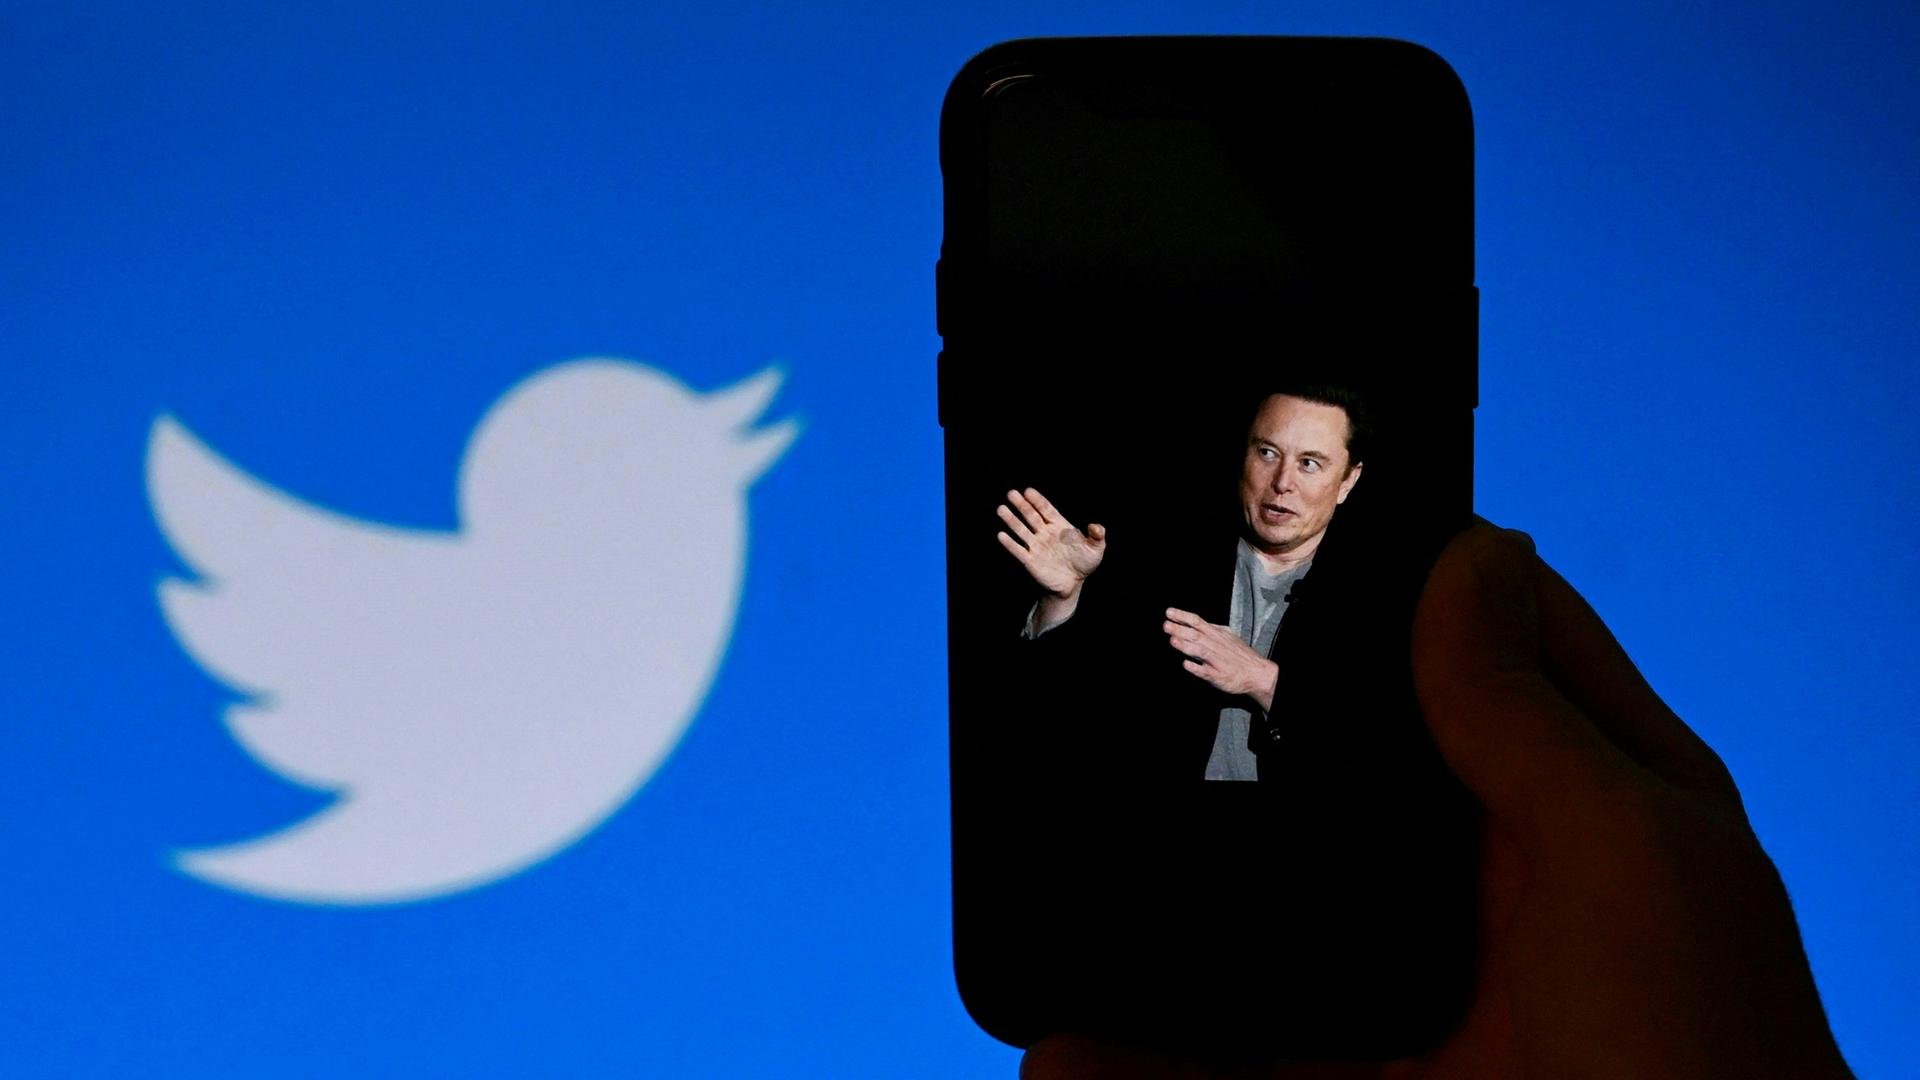 Elon Musk auf dem Display eines Smartphones, daneben das Twitterlogo.